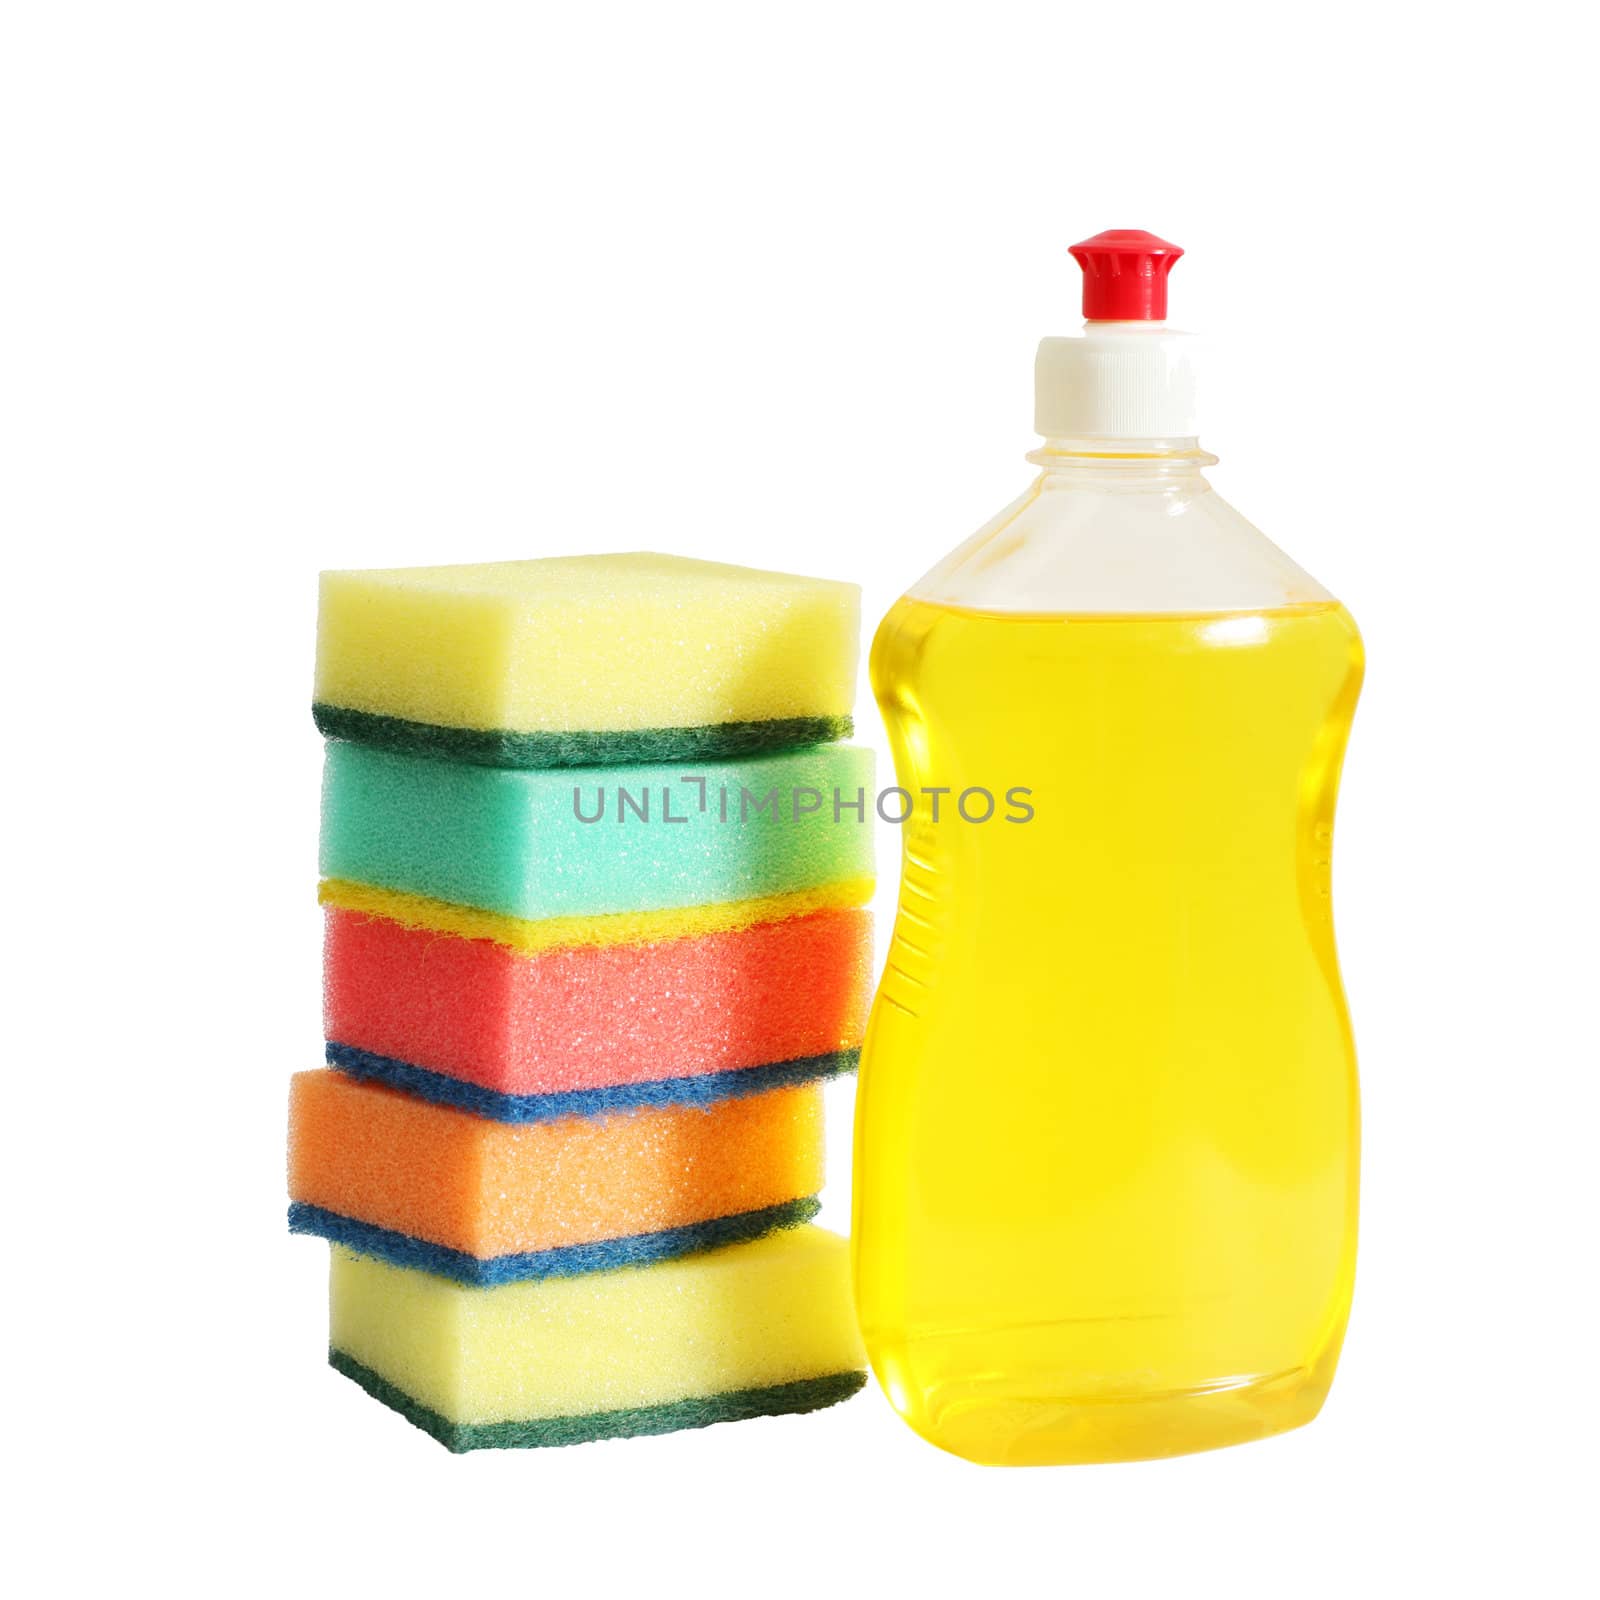 Bottle and sponges by velkol